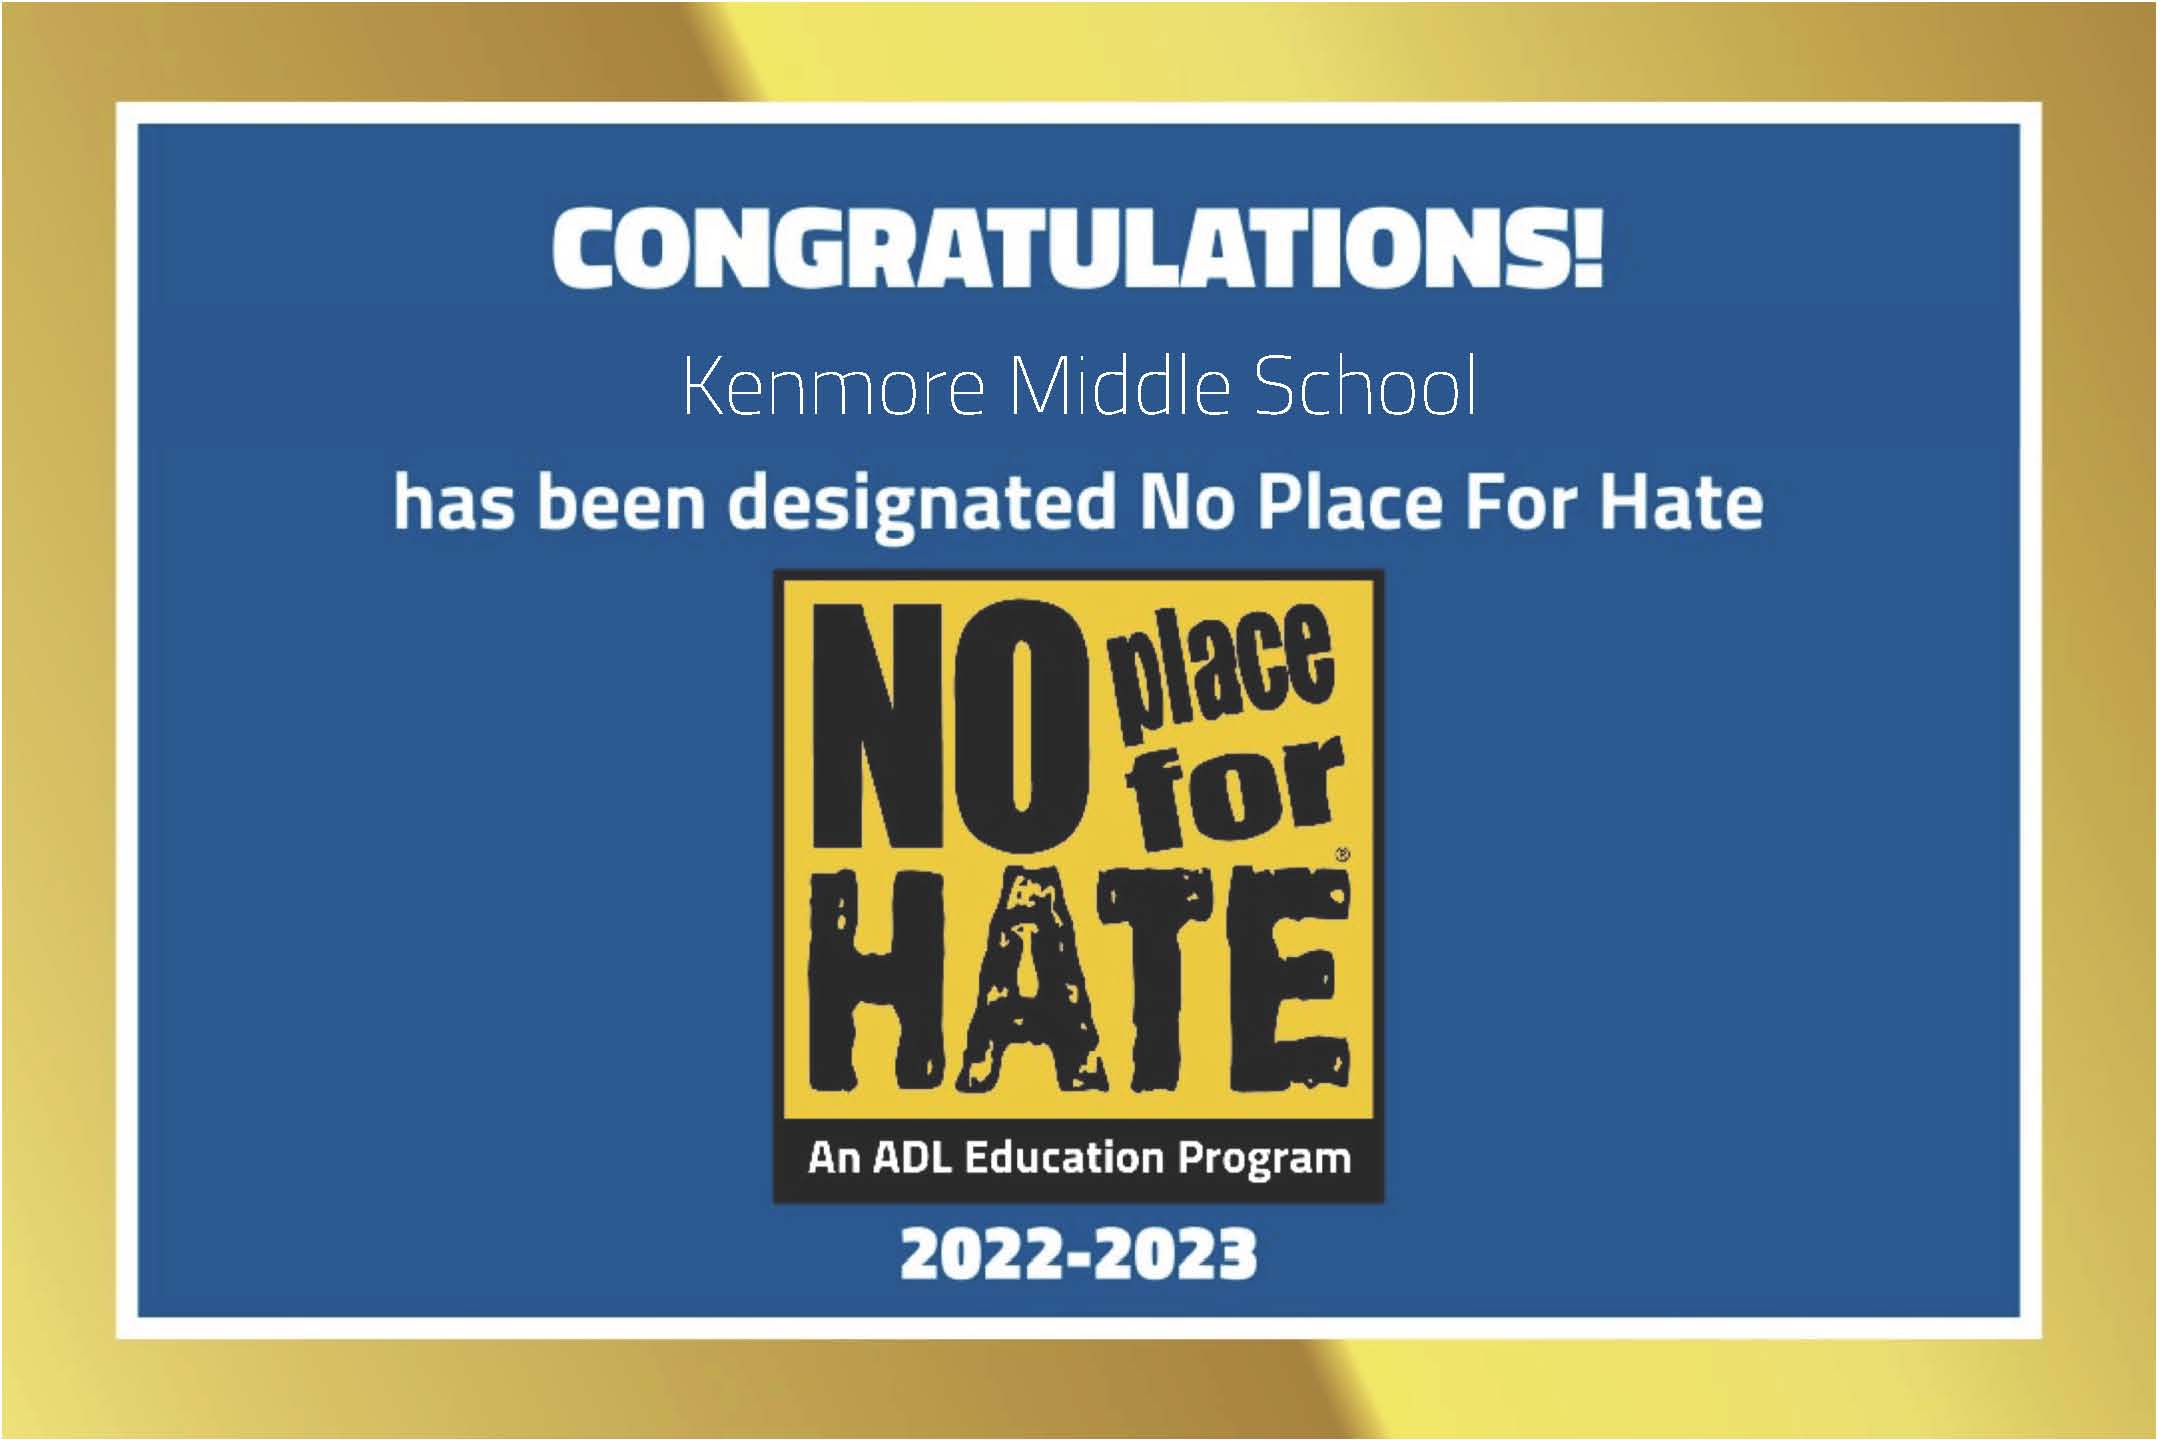 Kenmore foi designada como uma escola No Place for Hate para o ano letivo de 2022-2023!